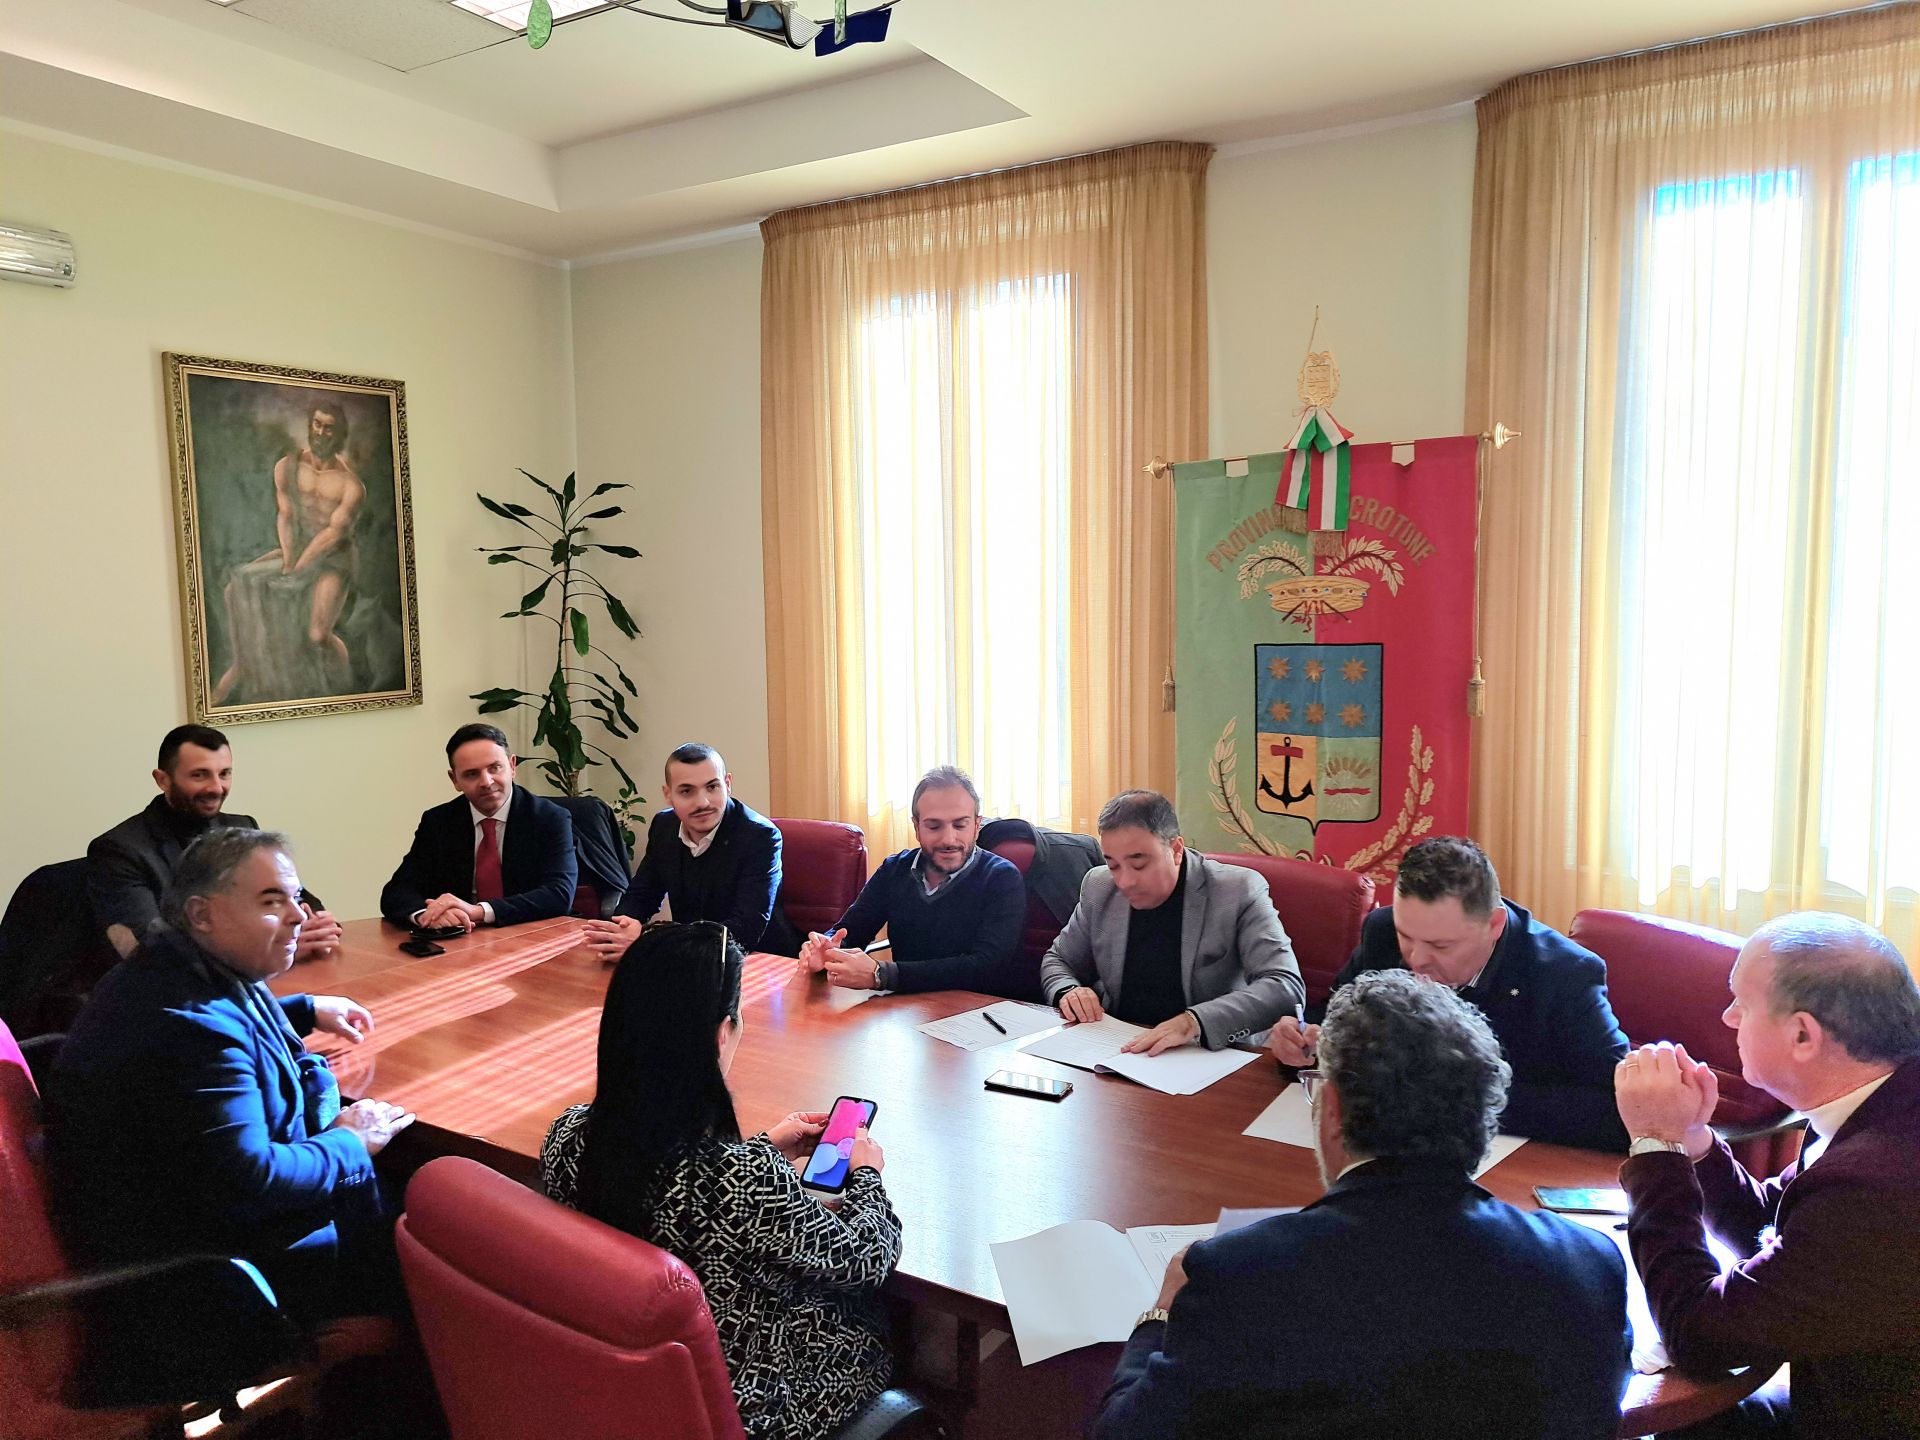 Provincia di Crotone, il consiglio approva il Piano per l'offerta formativa: si punta sulla specificità territoriale e sulla delocalizzazione